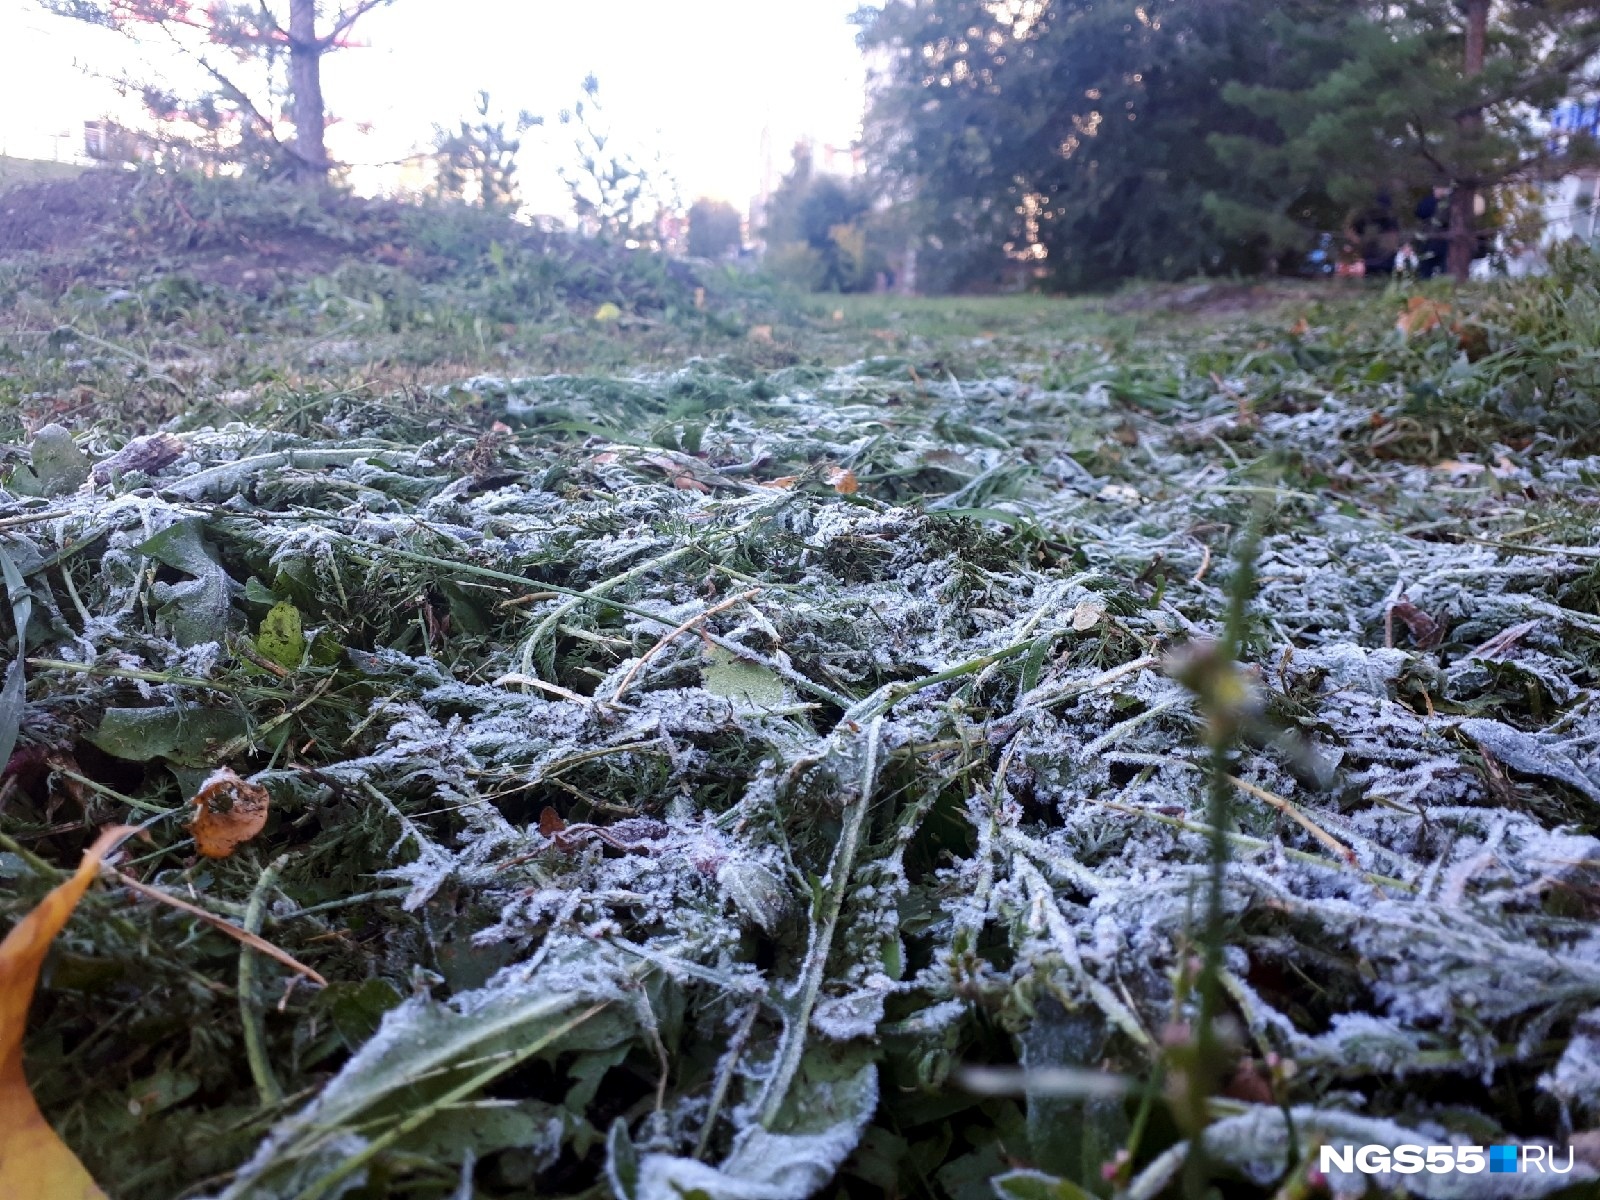 Заморозки в области. Обледенелая трава. Замерзшая трава. Заморозки и ветер. Заморозки на траве.